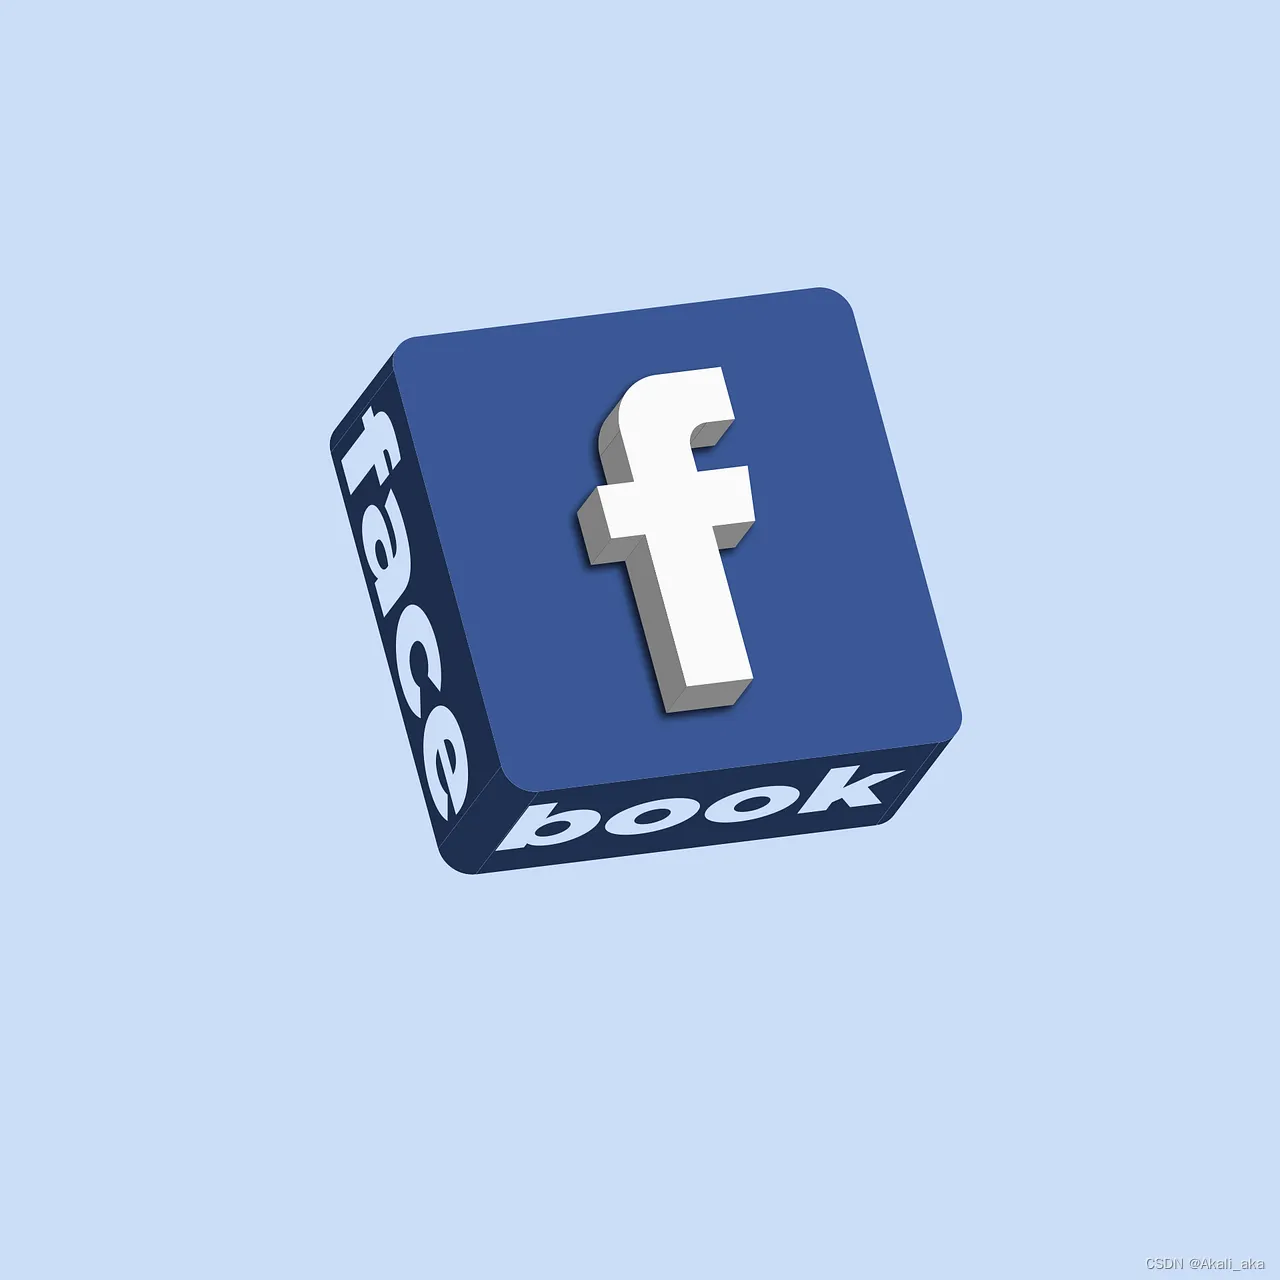  Facebook开户 | Facebook二不限户